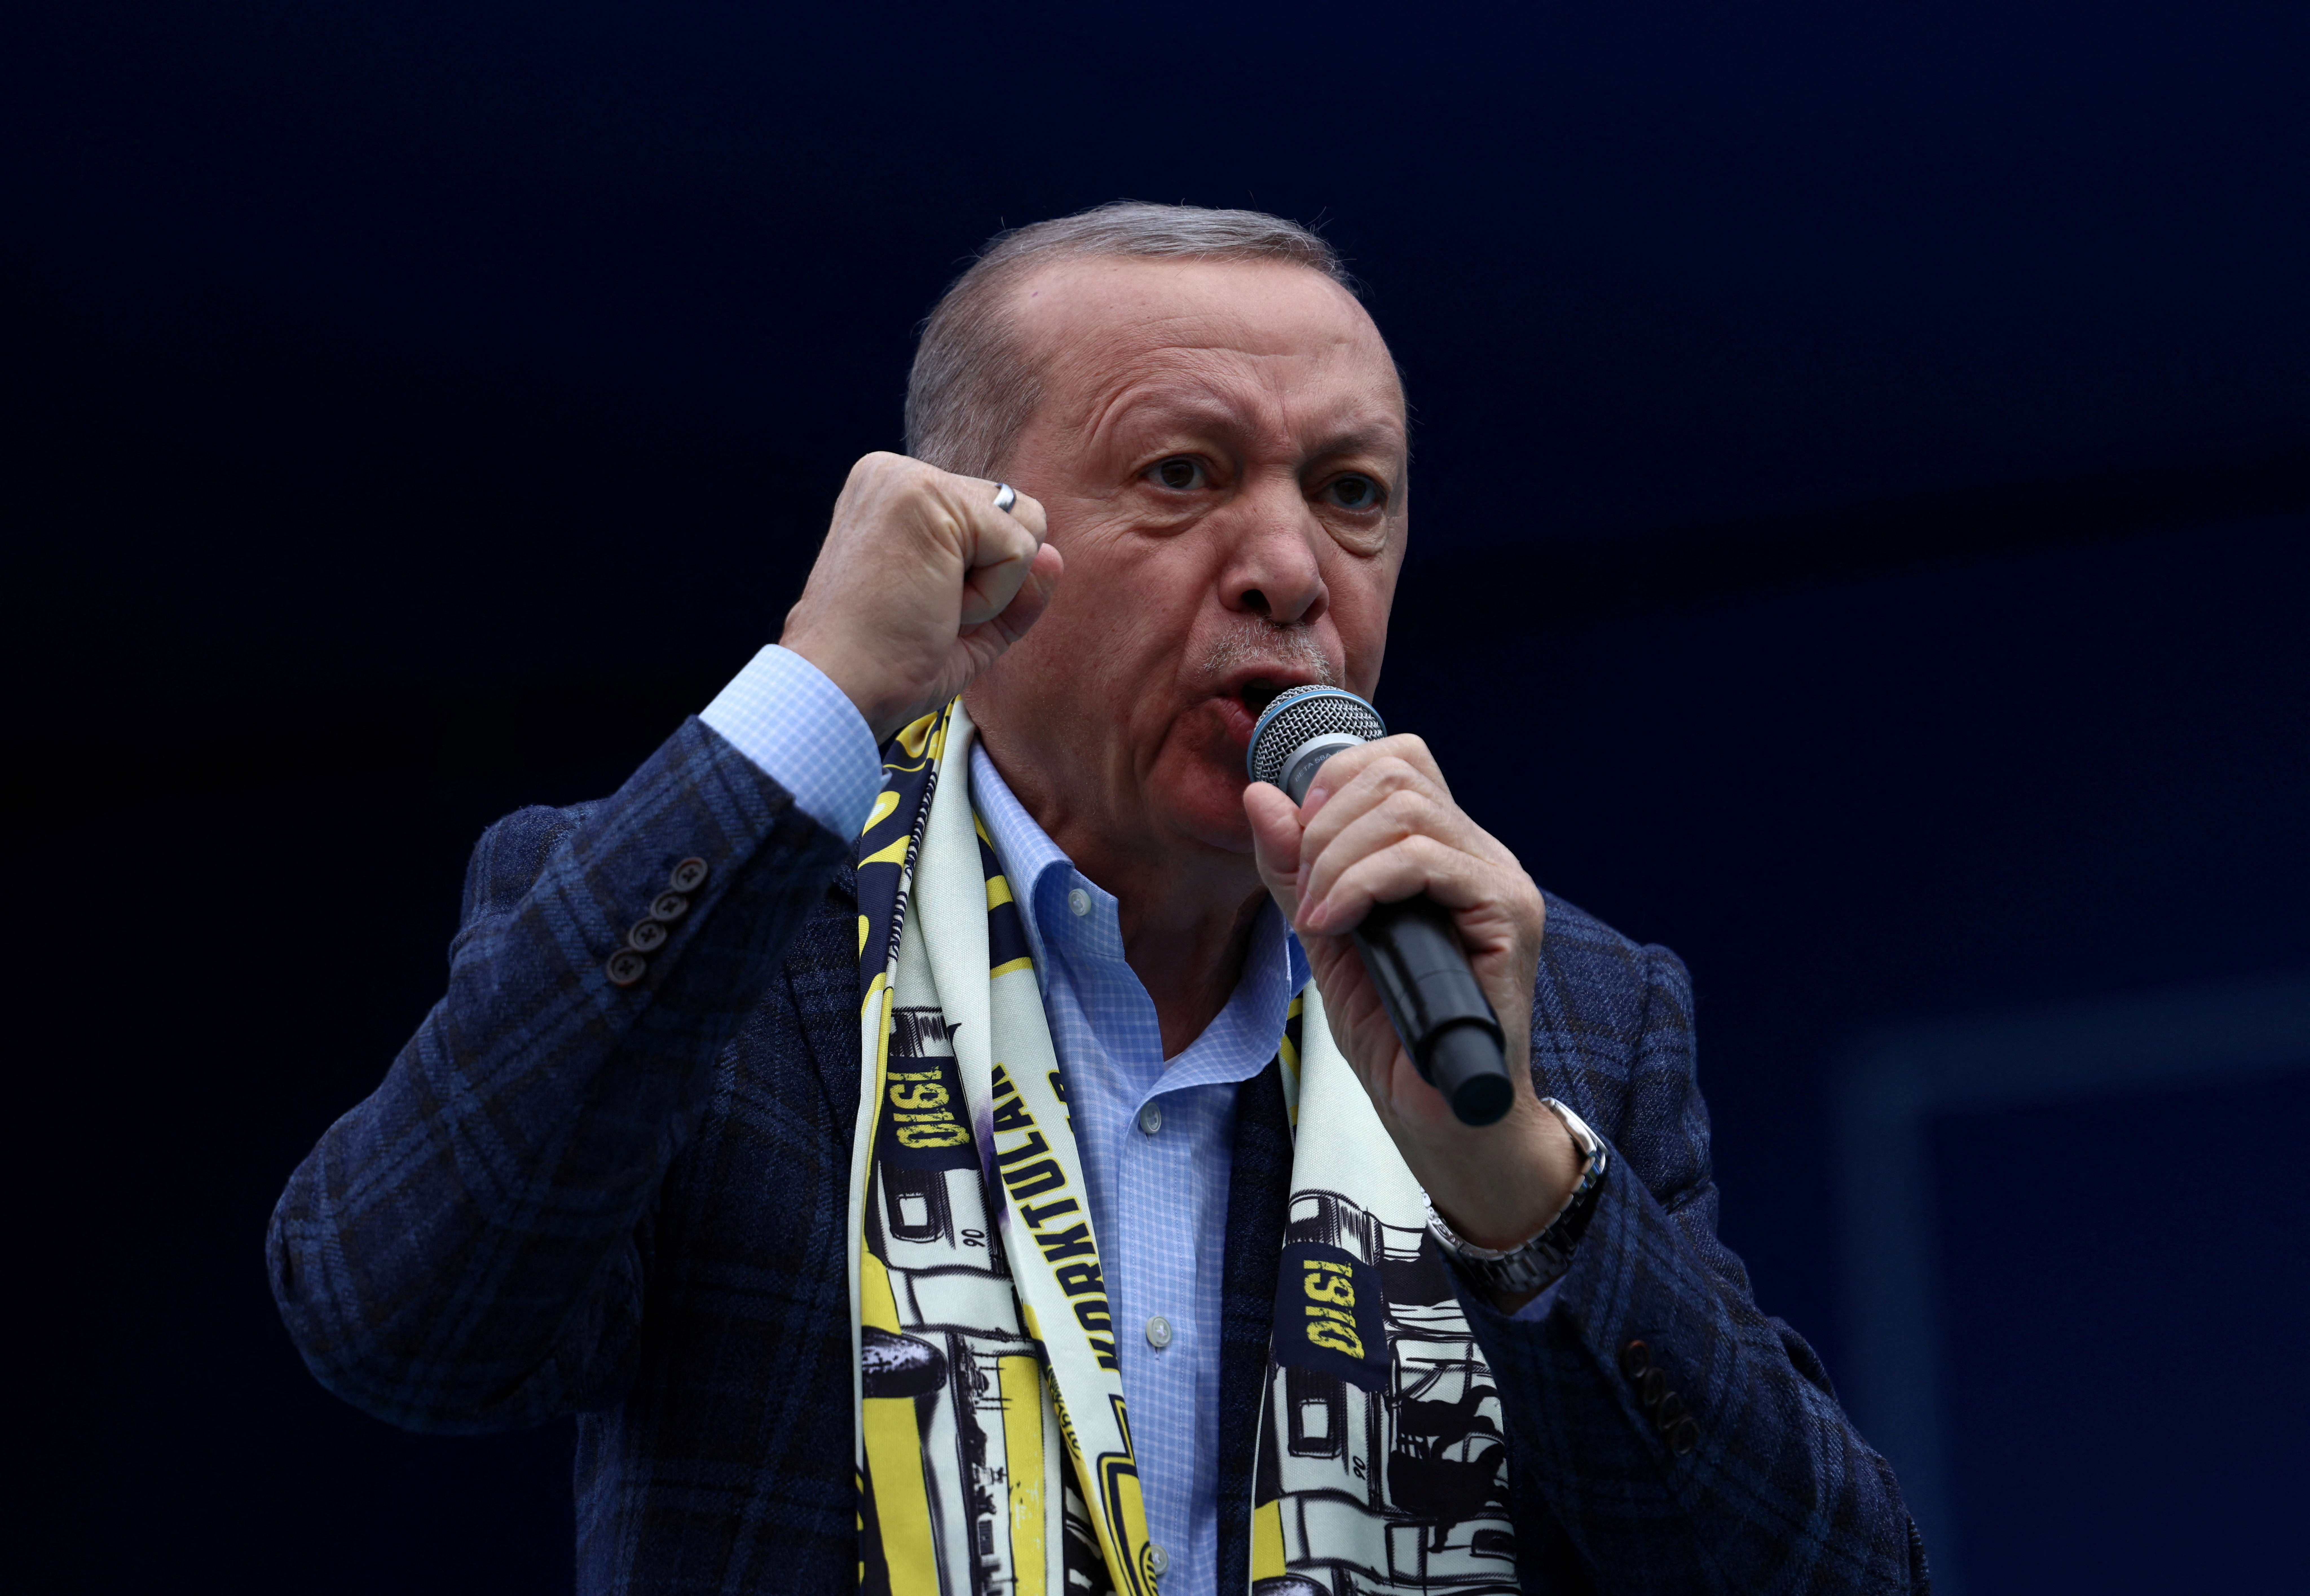 Εκλογές στην Τουρκία – Ερντογάν: Η Δύση προσπάθησε να επηρεάσει το αποτέλεσμα επειδή δεν αγοράζουμε από εκεί όπλα